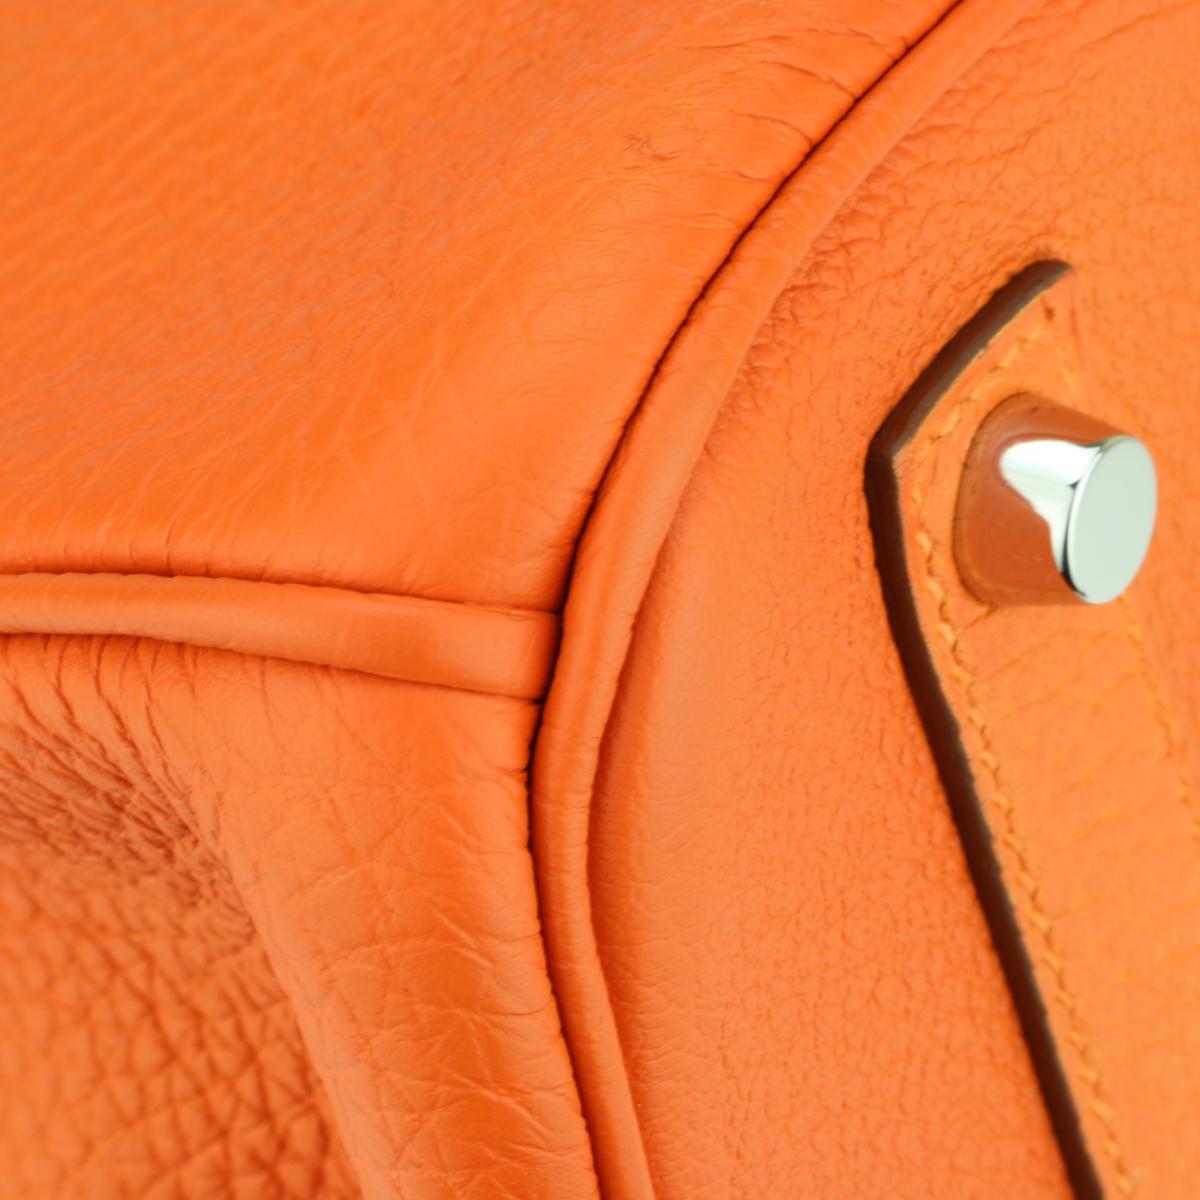 Hermès Birkin Bag 35cm Orange Togo Leather with Palladium Hardware Stamp N 2010 2